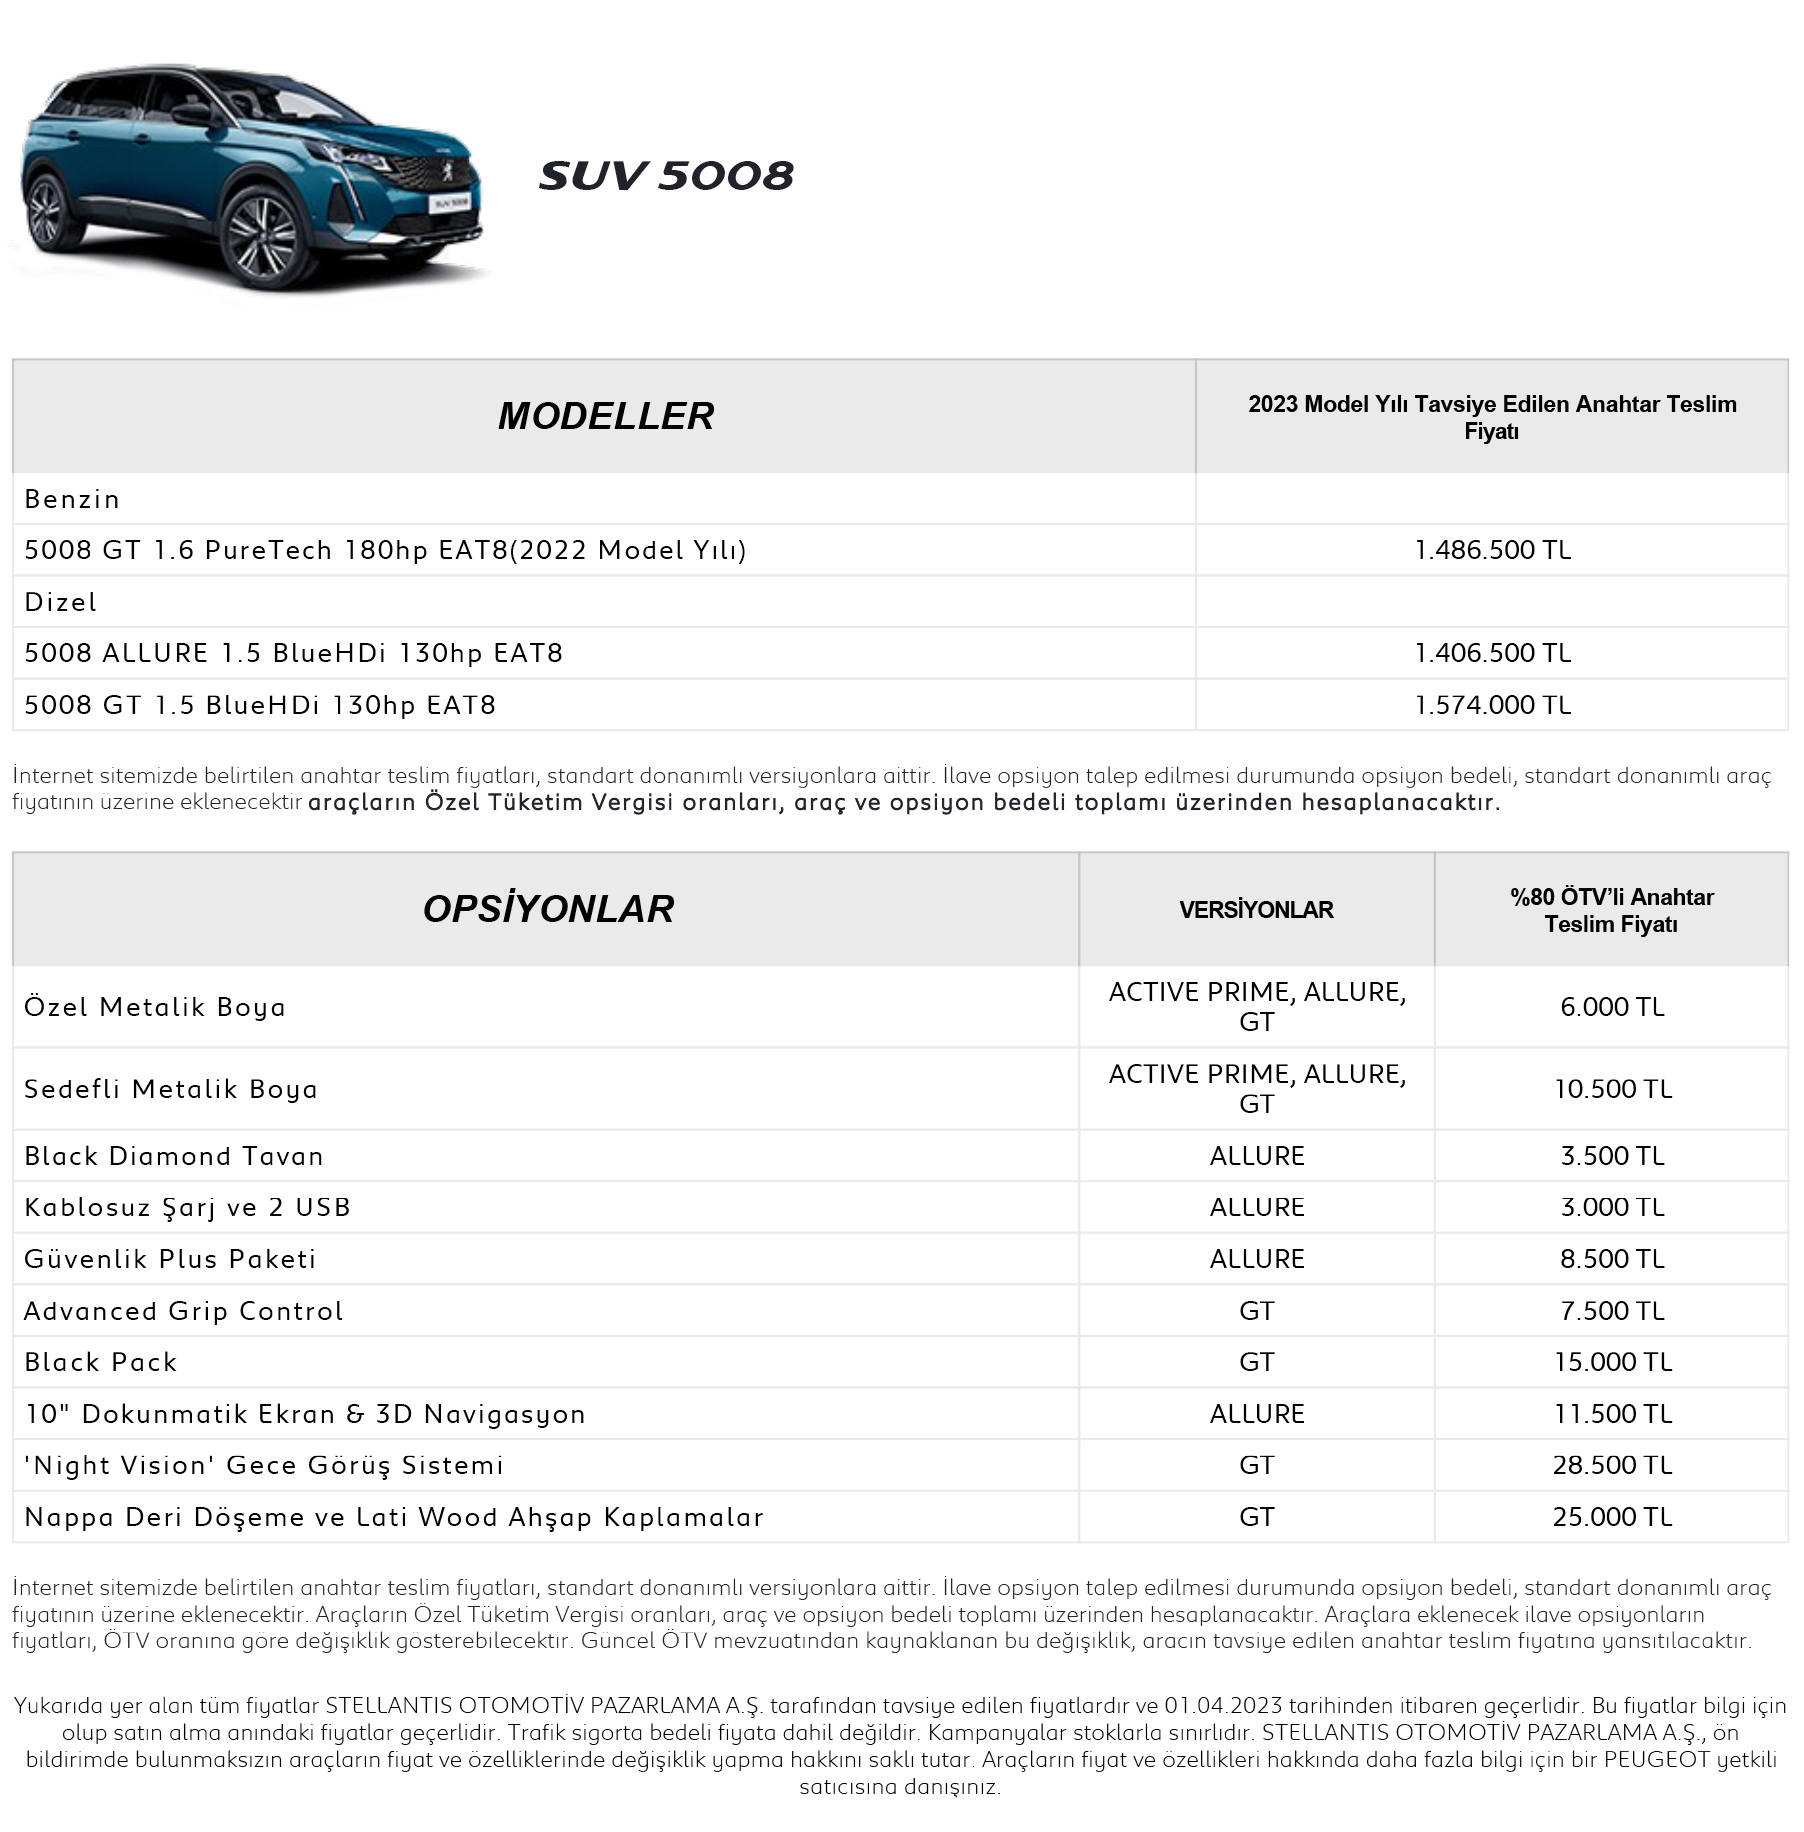 Peugeot SUV 5008 Fiyat Listesi